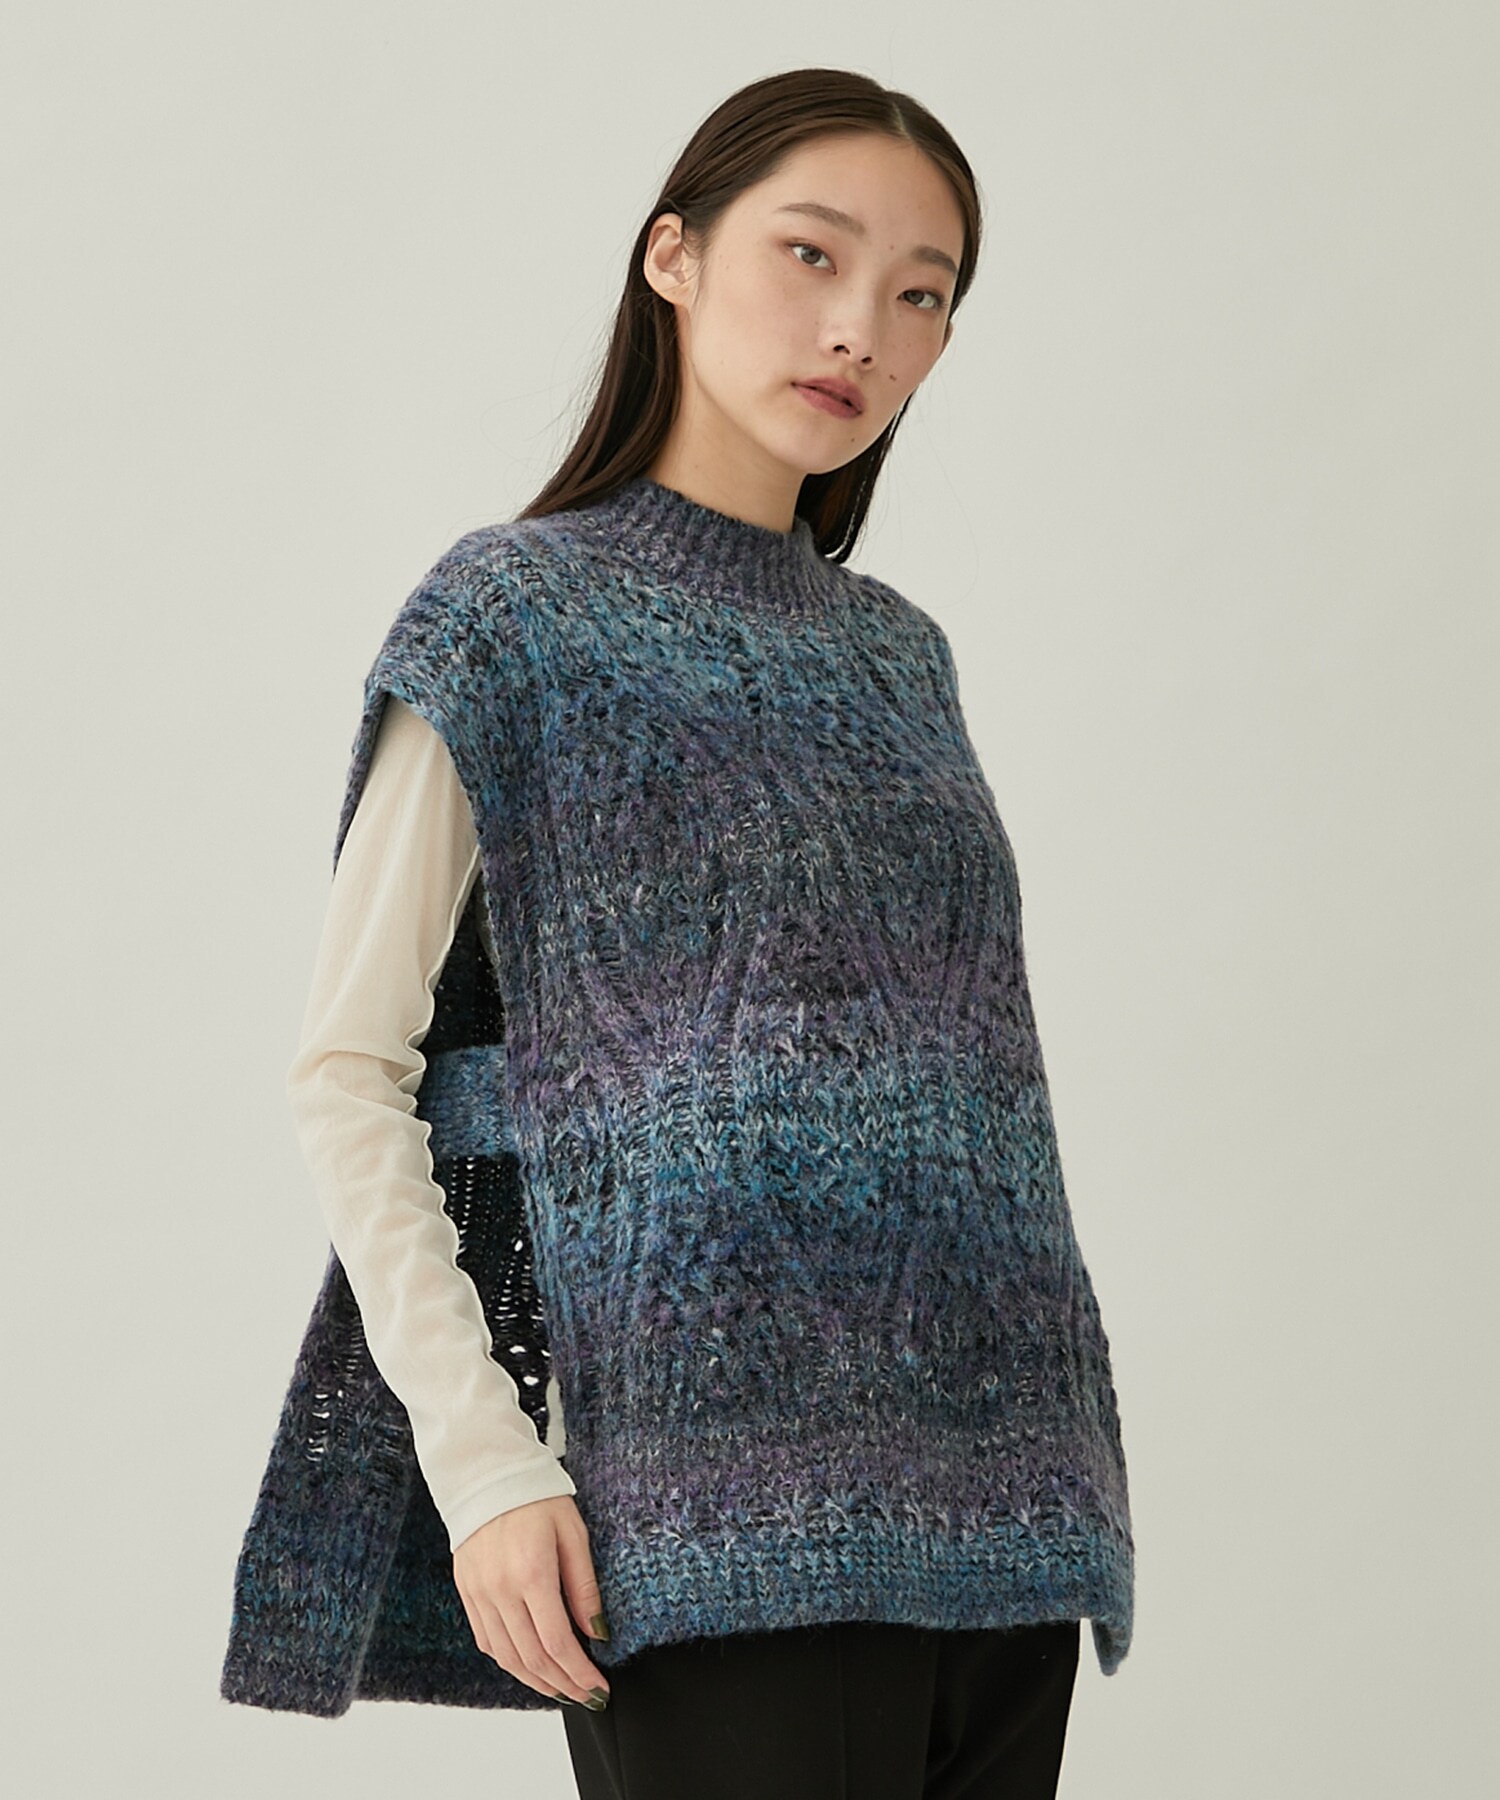 Hazy knit vest